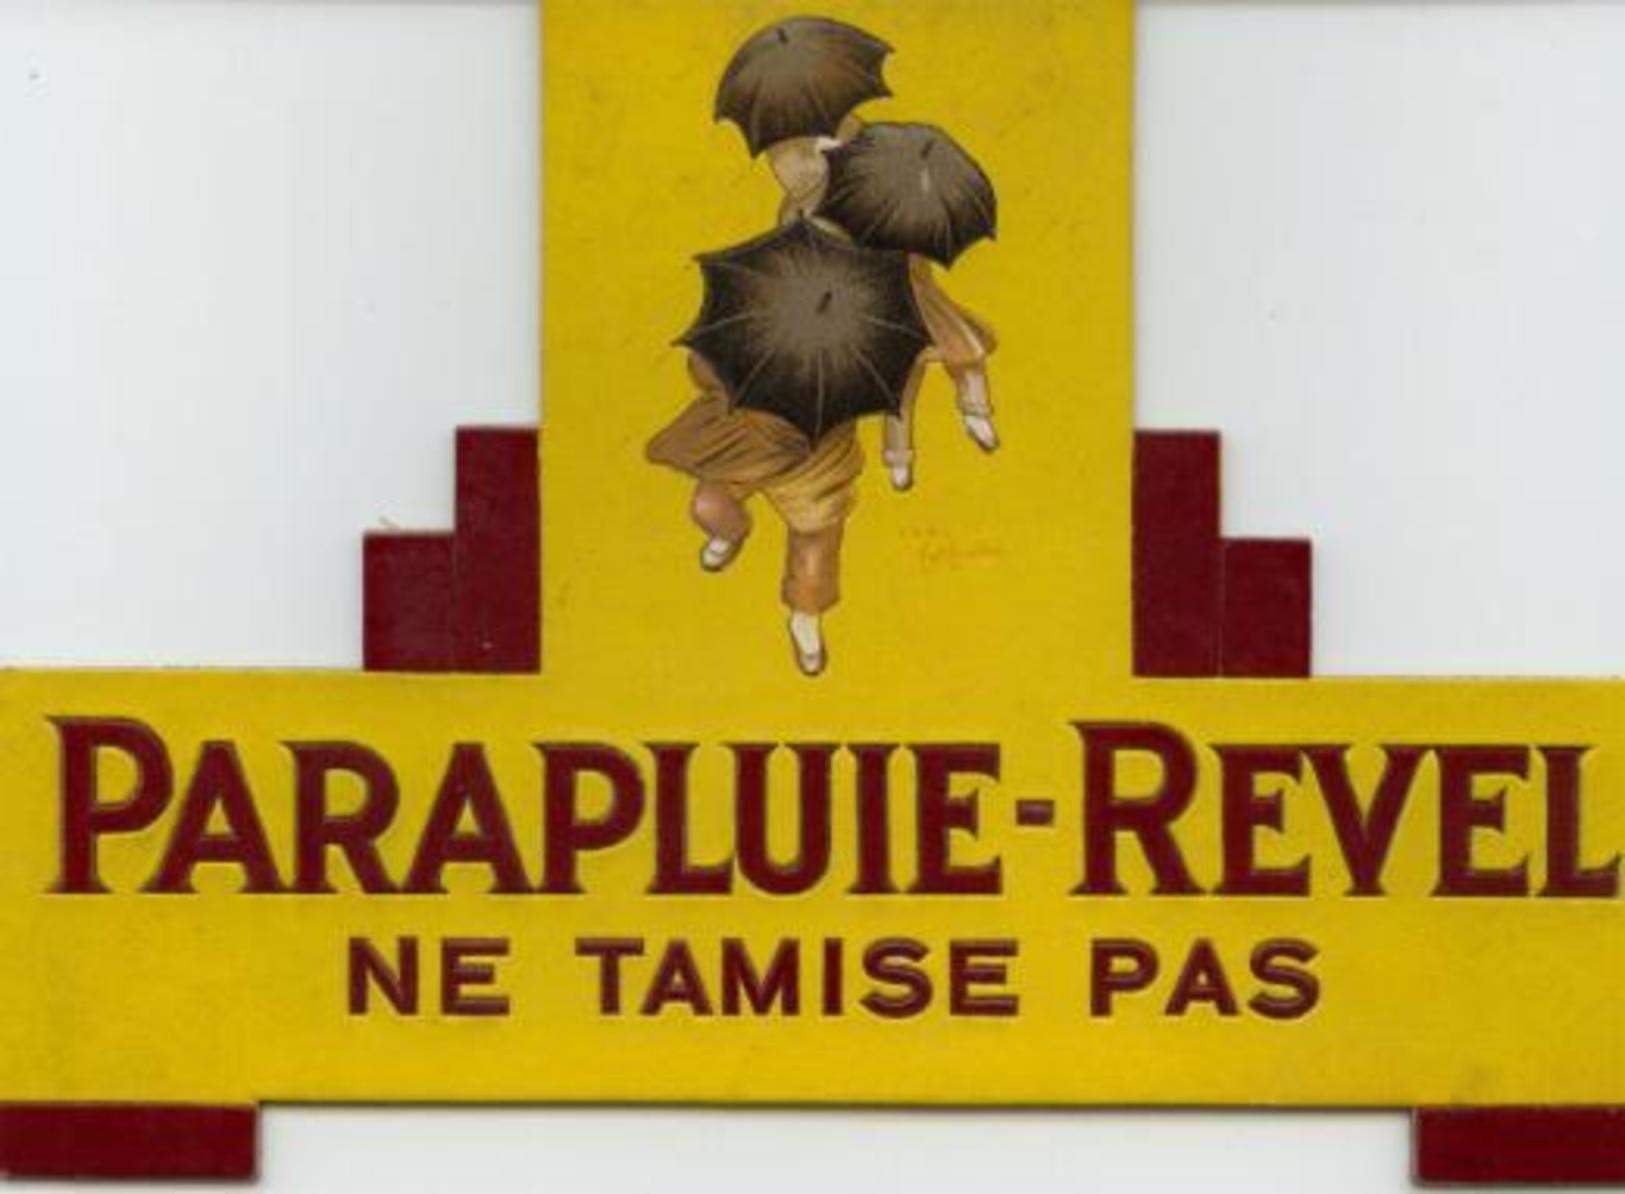 Publicité Cartonnée "PARAPLUIE REVEL" - Pappschilder